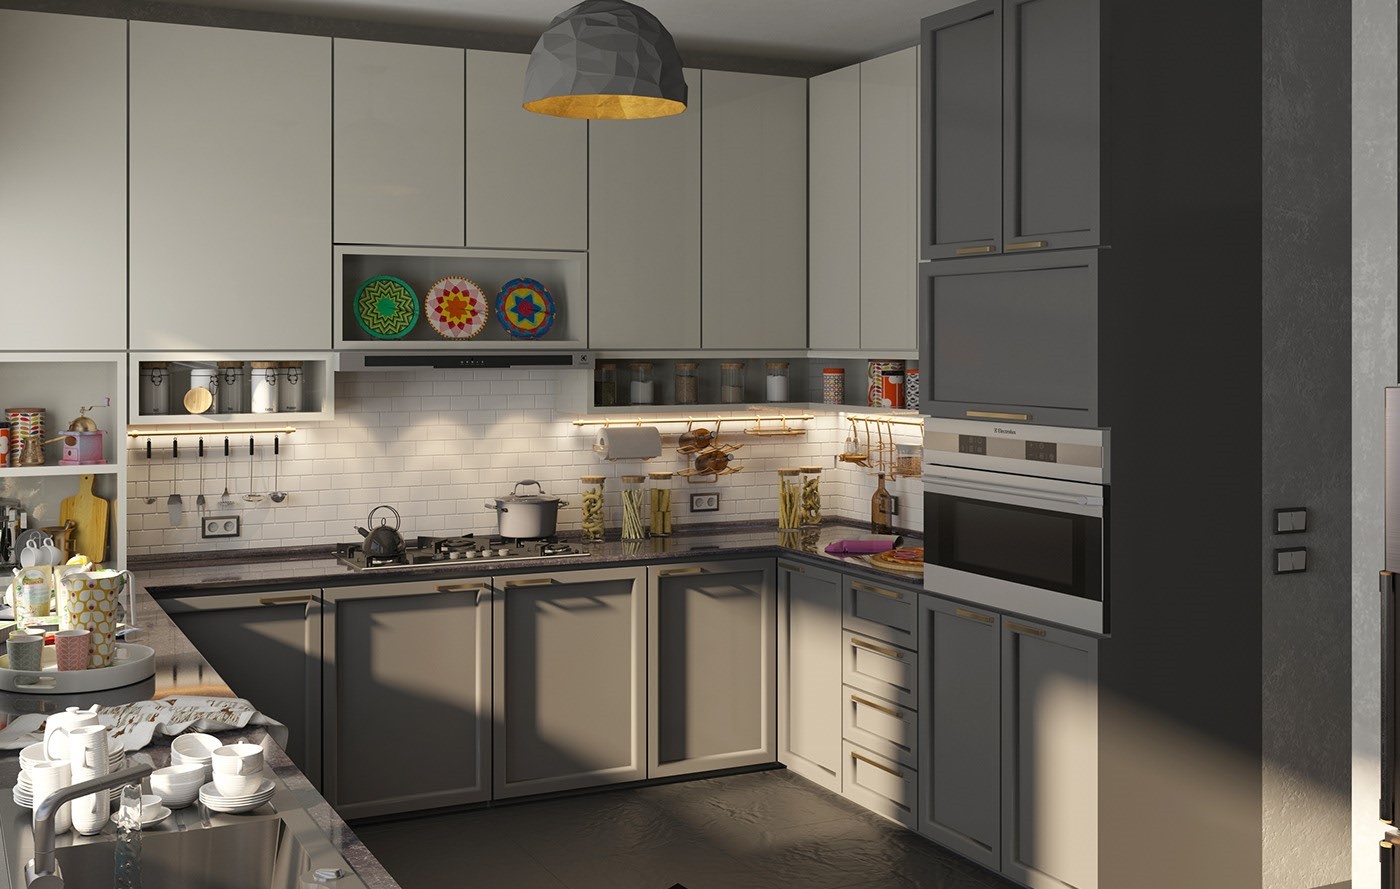 Tủ bếp màu xám dễ kết hợp với nội thất khác